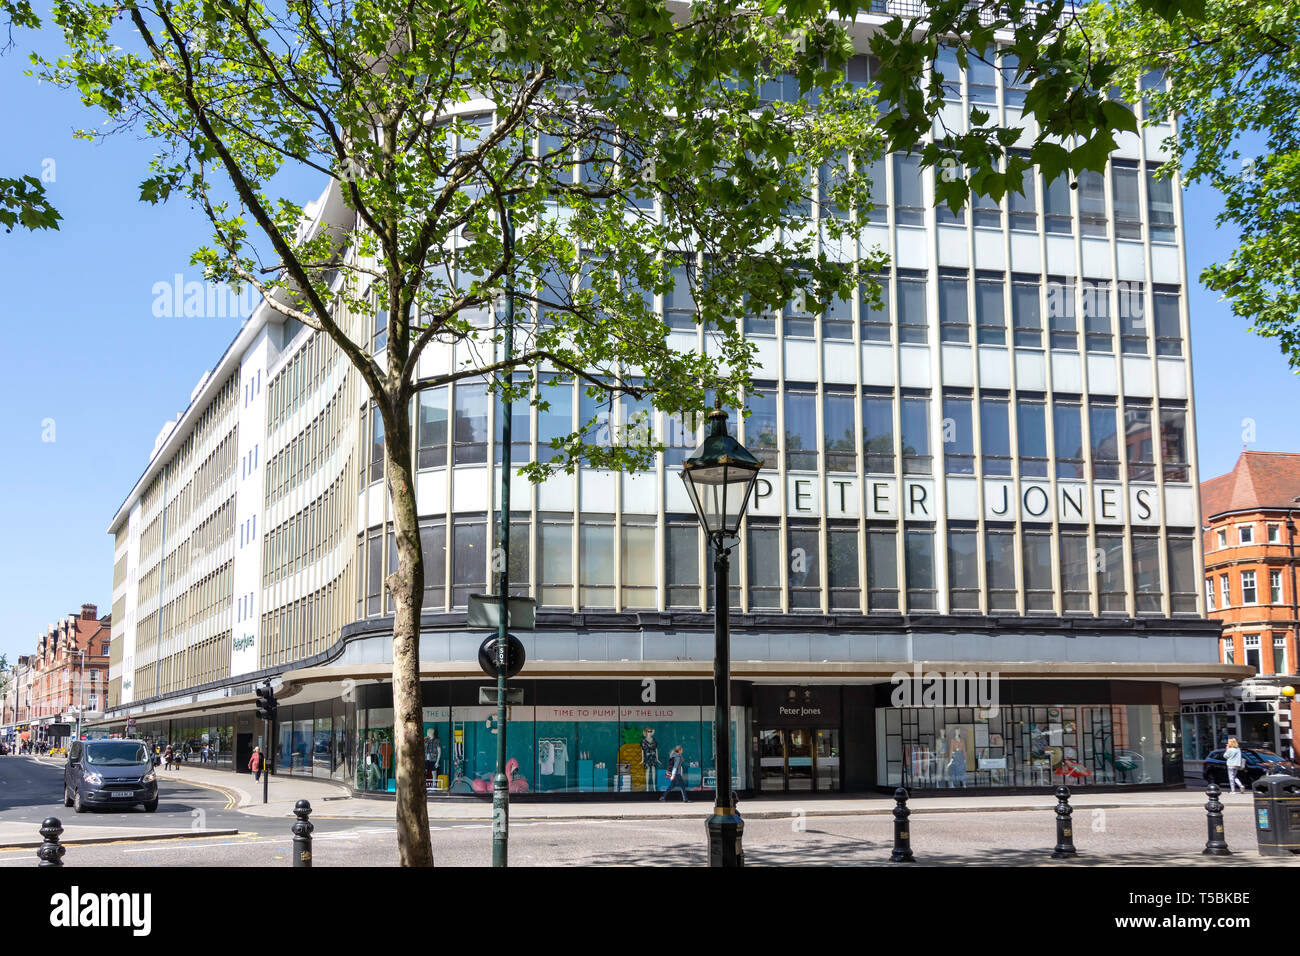 Peter Jones & Partners department store, Sloane Square, Chelsea, le quartier royal de Kensington et Chelsea, Greater London, Angleterre, Royaume-Uni Banque D'Images